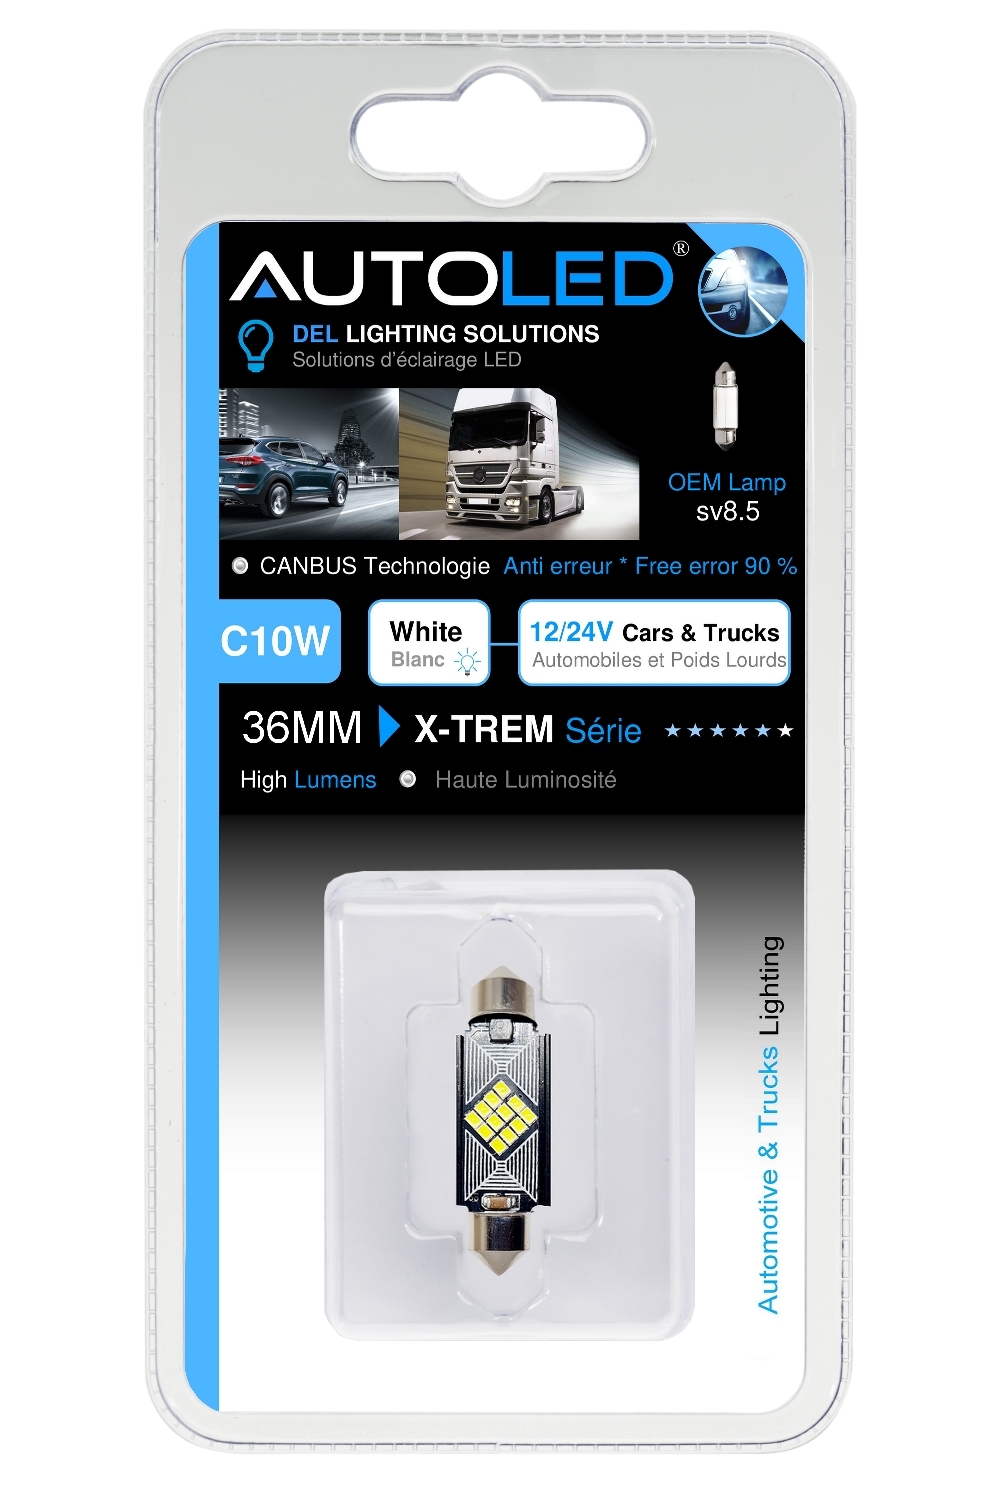 Ampoule C10W 36mm LED Canbus anti erreur éclairage intérieur LED plaque immatriculation-autoled-0284.8